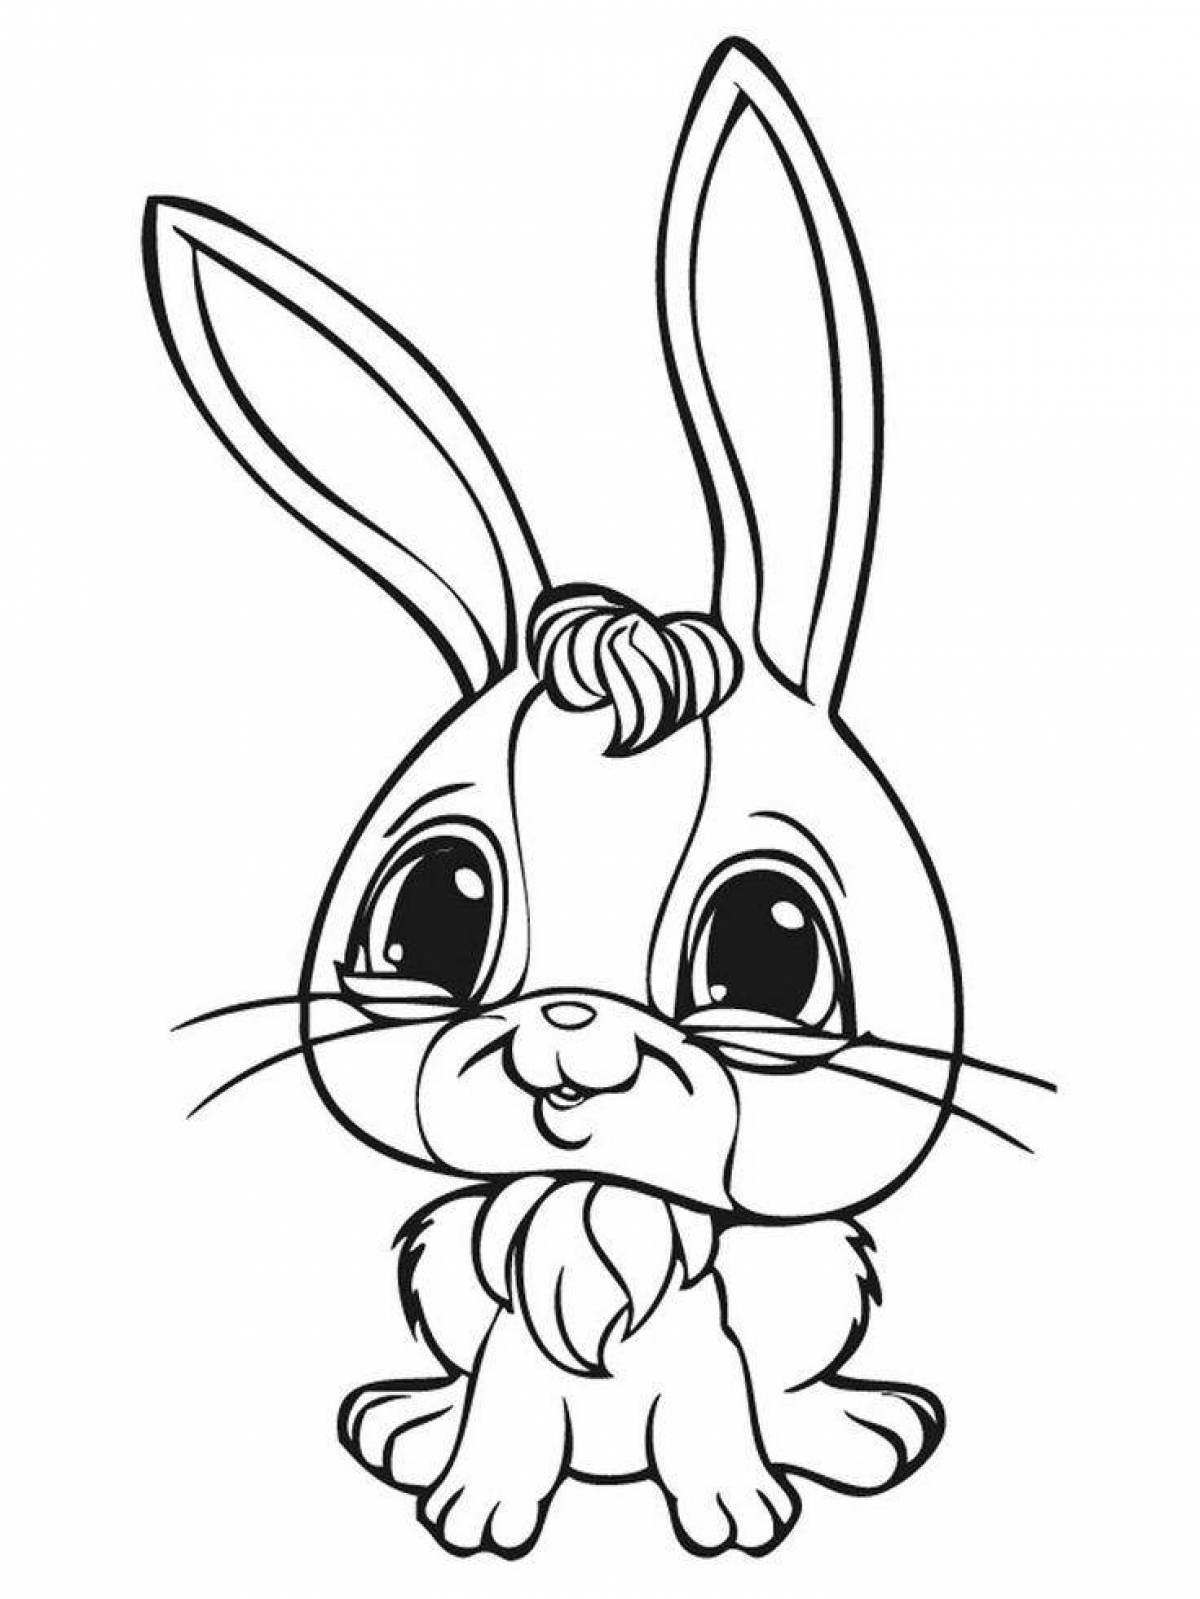 Забавная книжка-раскраска для кроликов